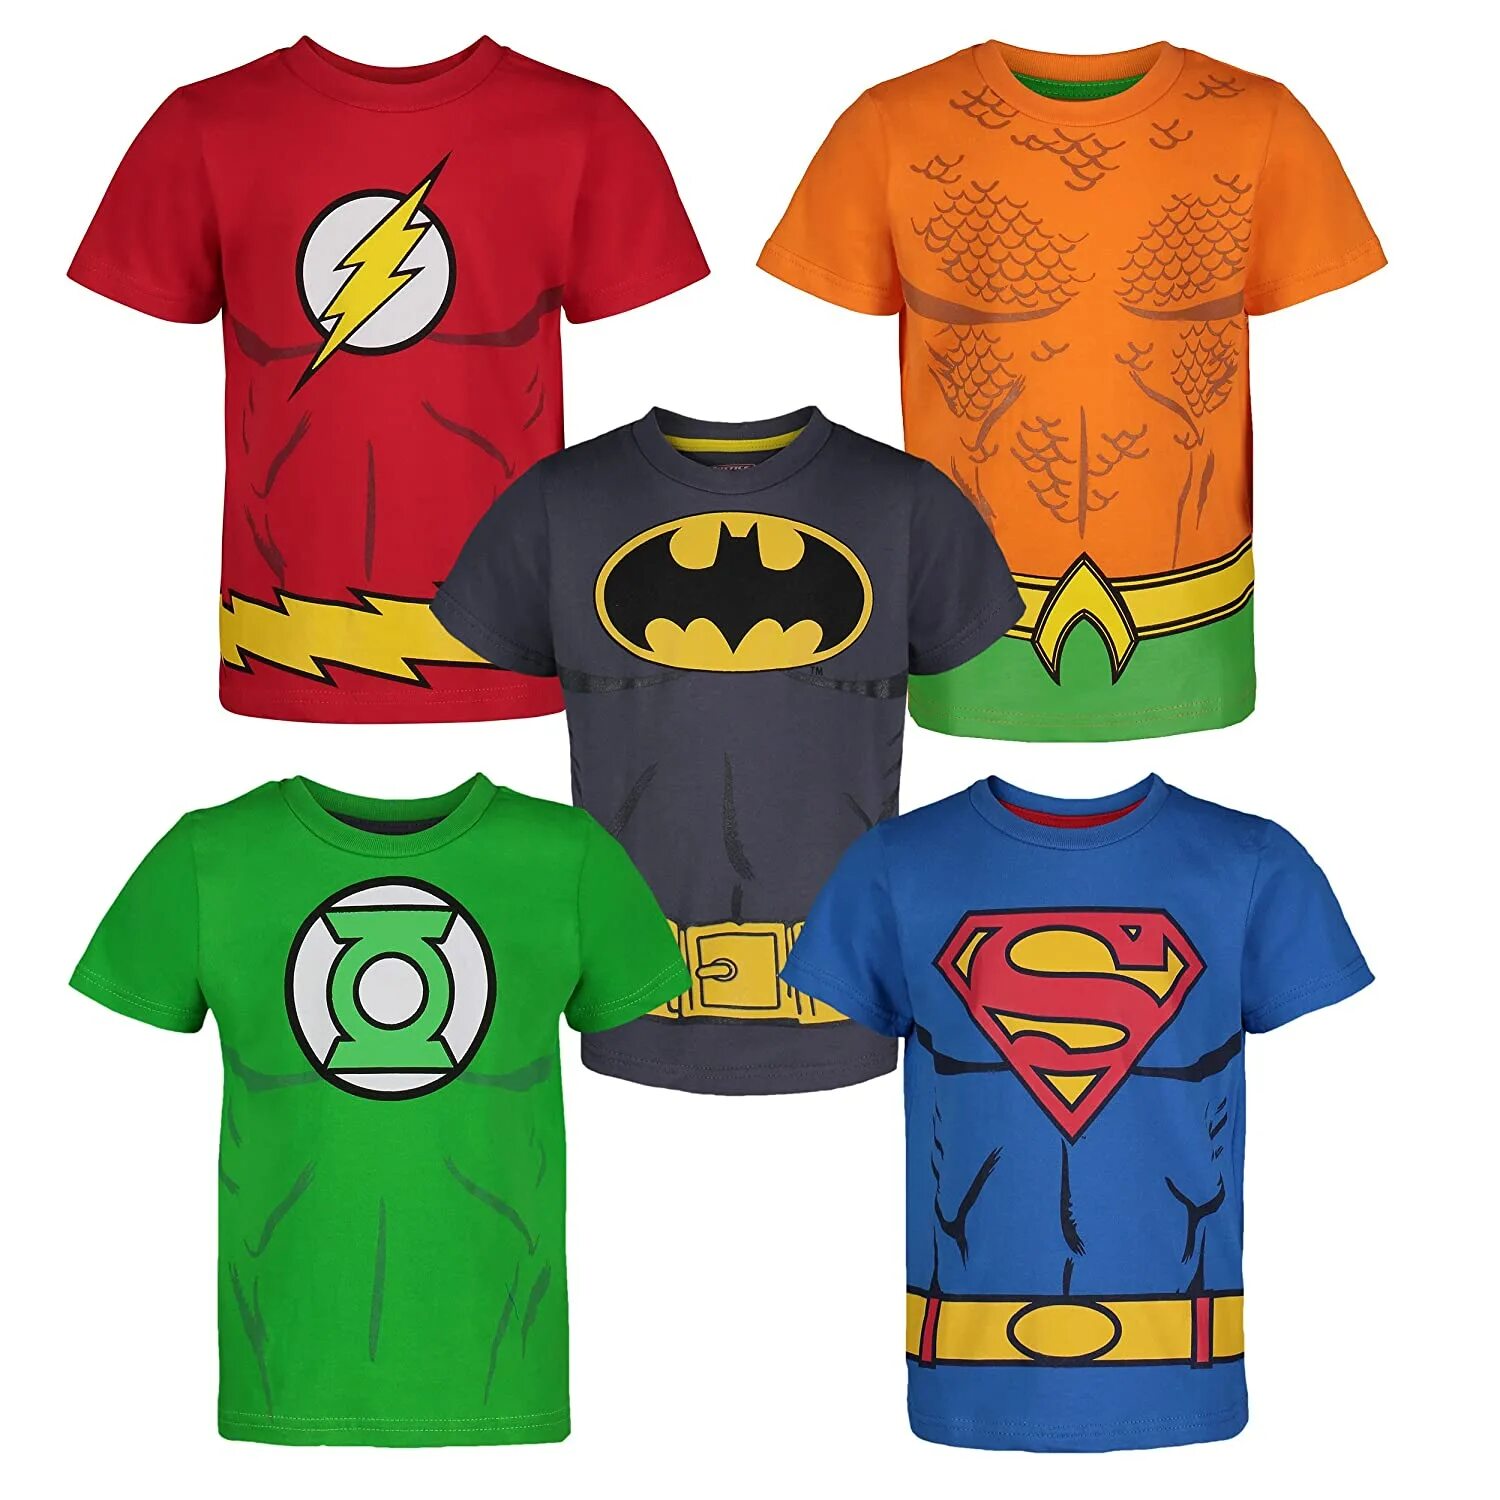 Superheroes pack. Бэтмен и Супермен футболка. Бэтмен и Супермен футболка детская. Футболка лига справедливости. Майка Justice is Comics.